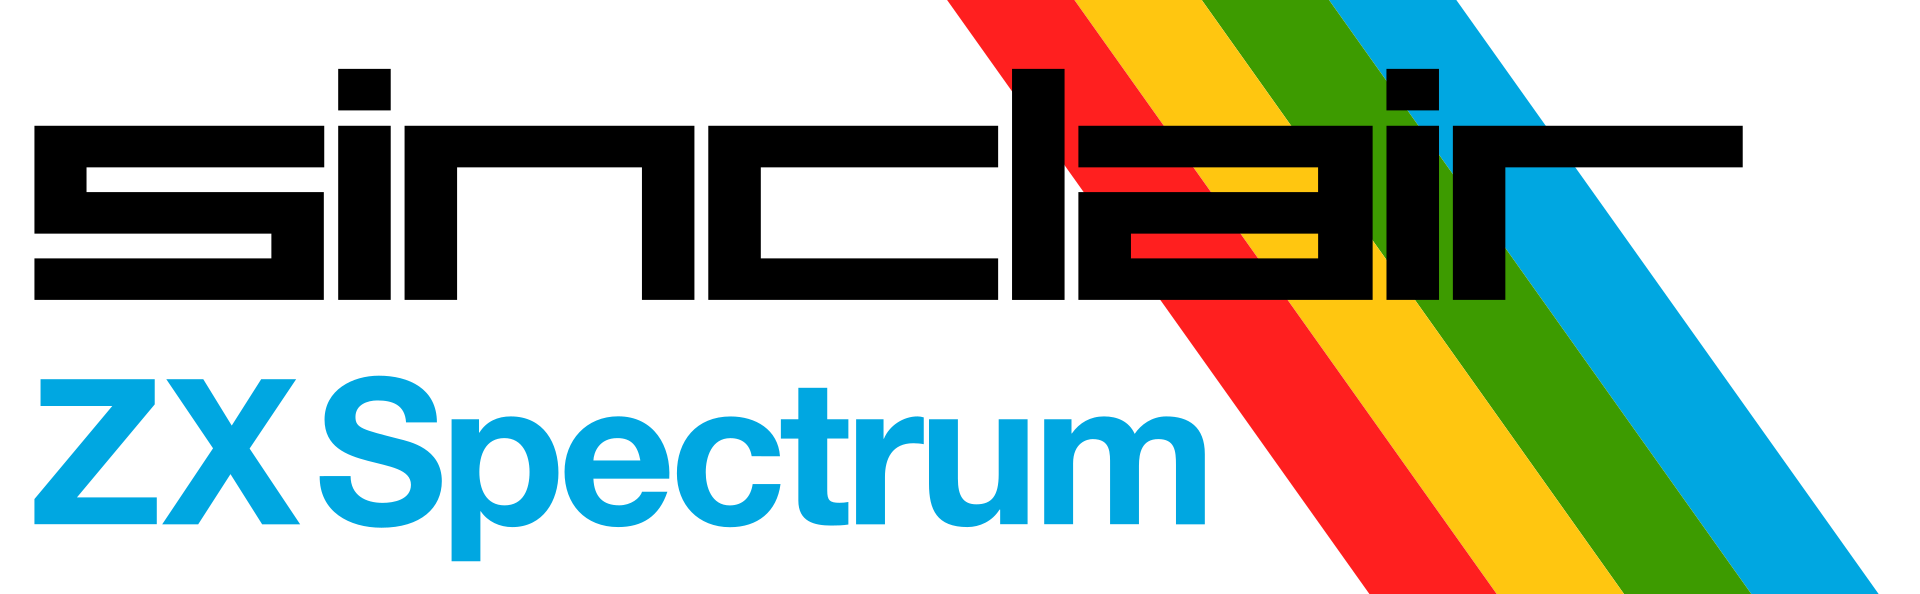 Sinclair Spectrum logo